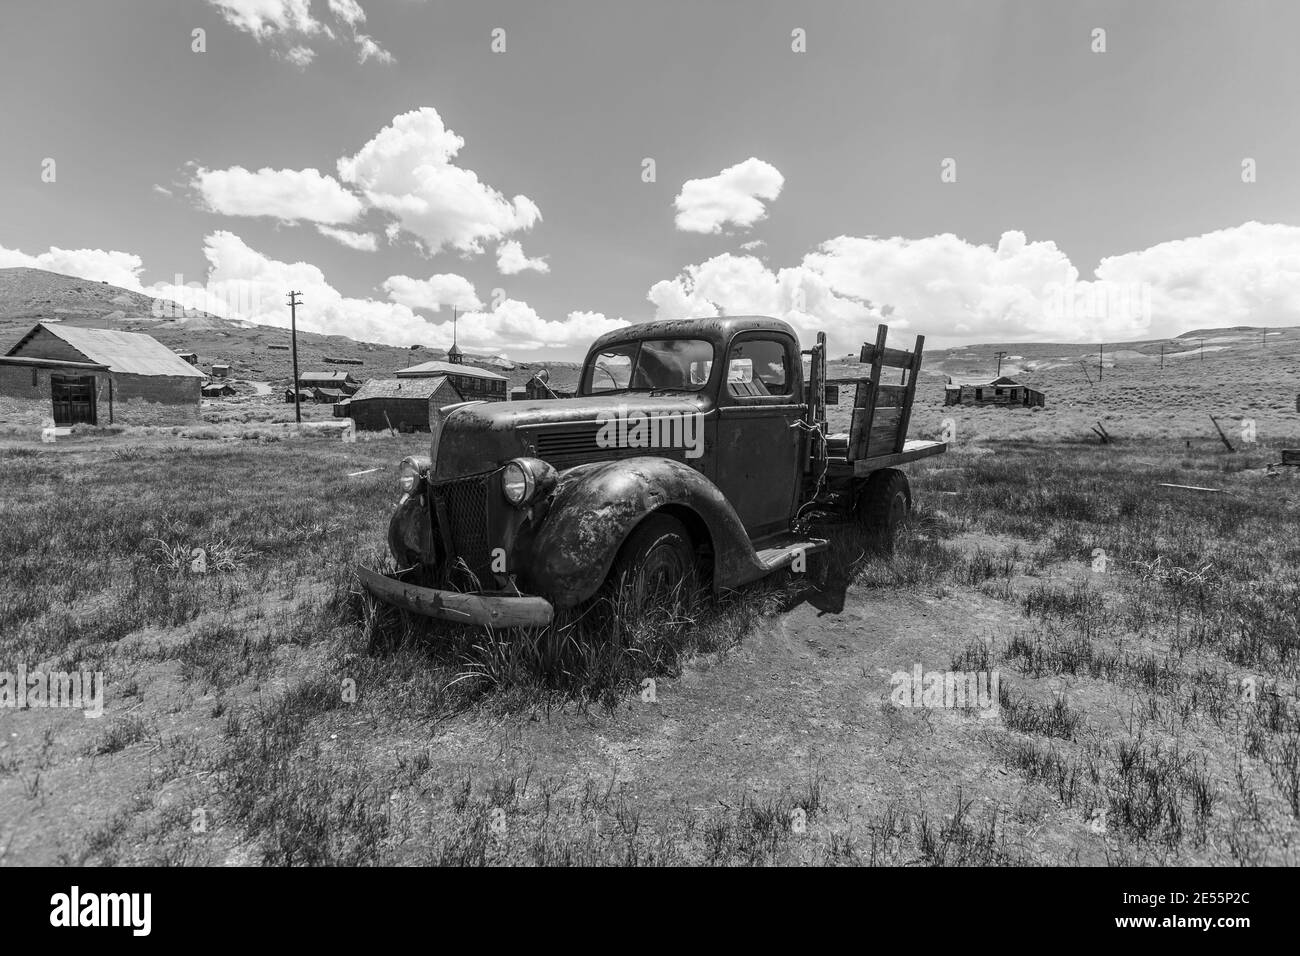 Bodie, California, EE.UU. - 6 de julio de 2015: Camión de recogida abandonado en blanco y negro en el Parque Histórico Estatal de Bodie cerca de Mammoth Lakes, California. Foto de stock